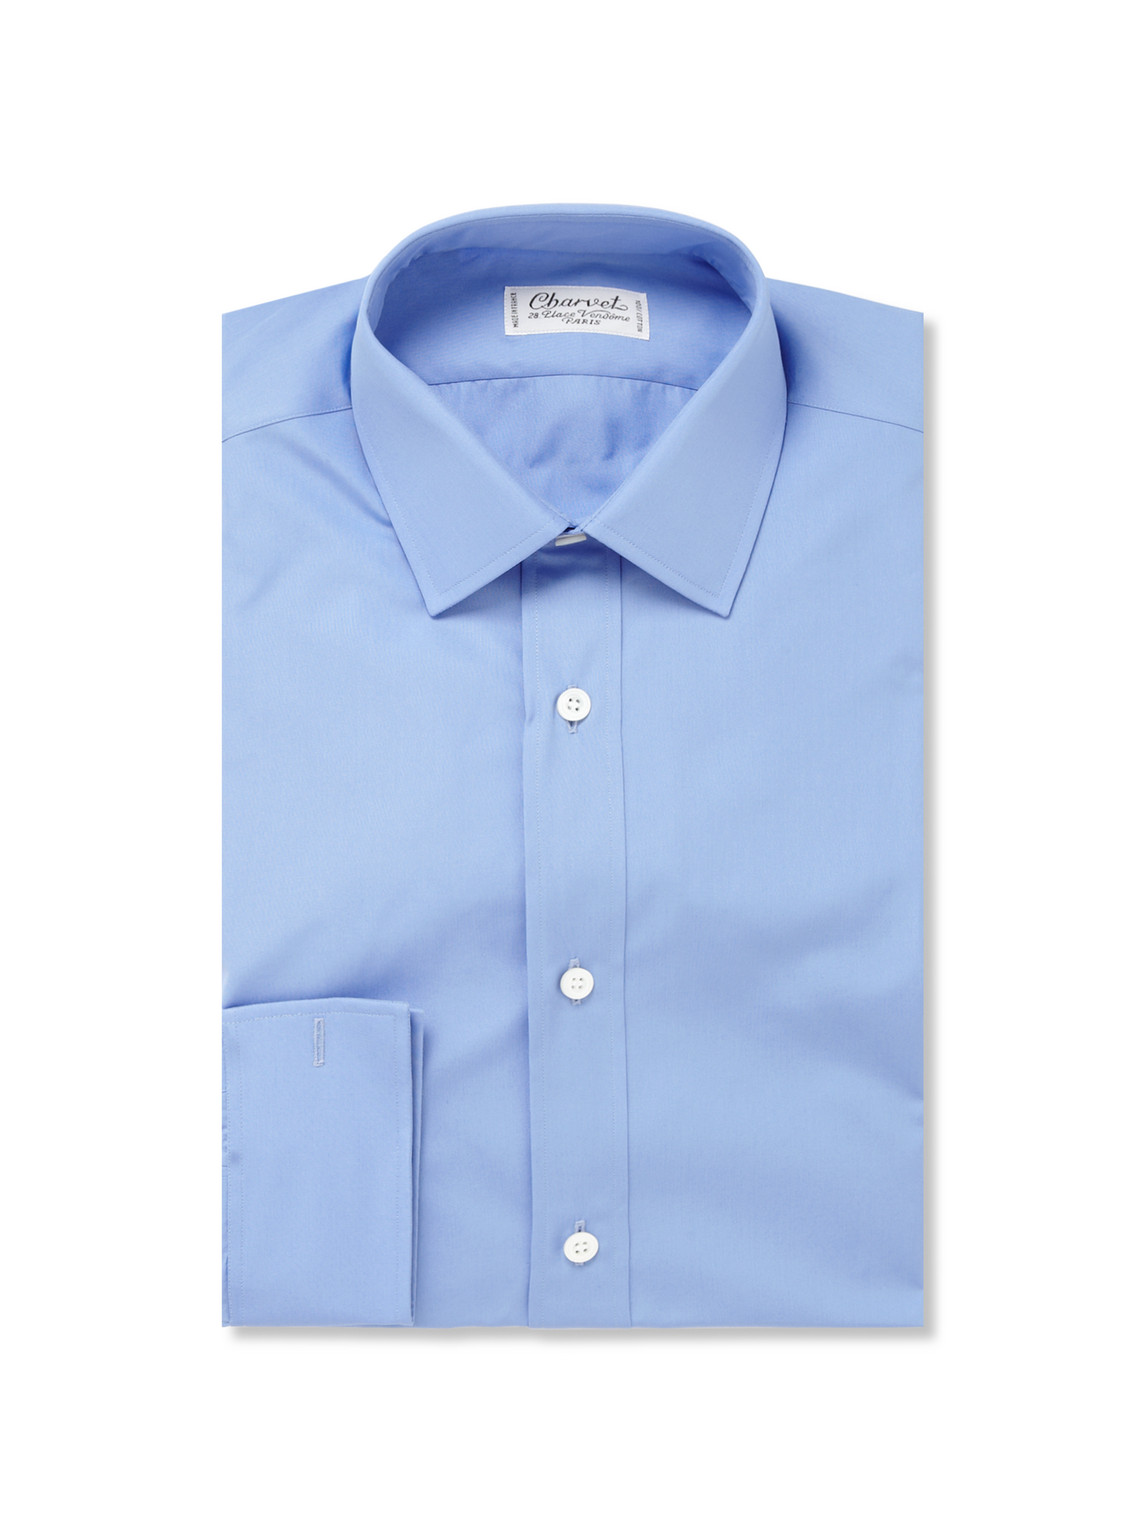 Shop Charvet Blue Cotton Shirt